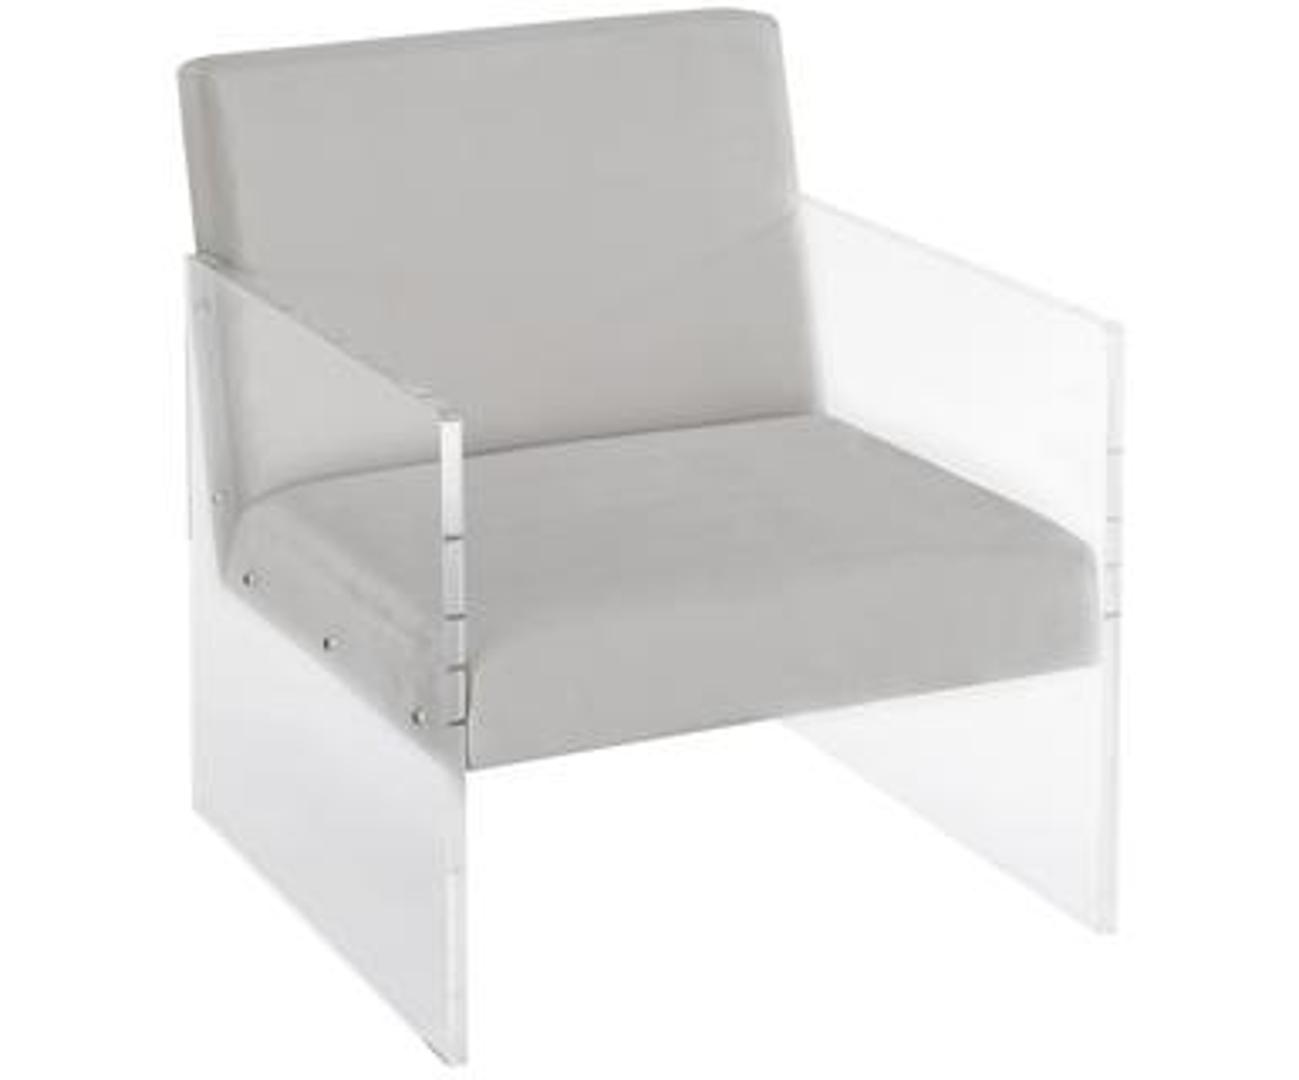 Moderna fotelja sa stranicama od pleksija vrlo je atraktivan detalj, a snižena je s 4384 na 1315 kuna